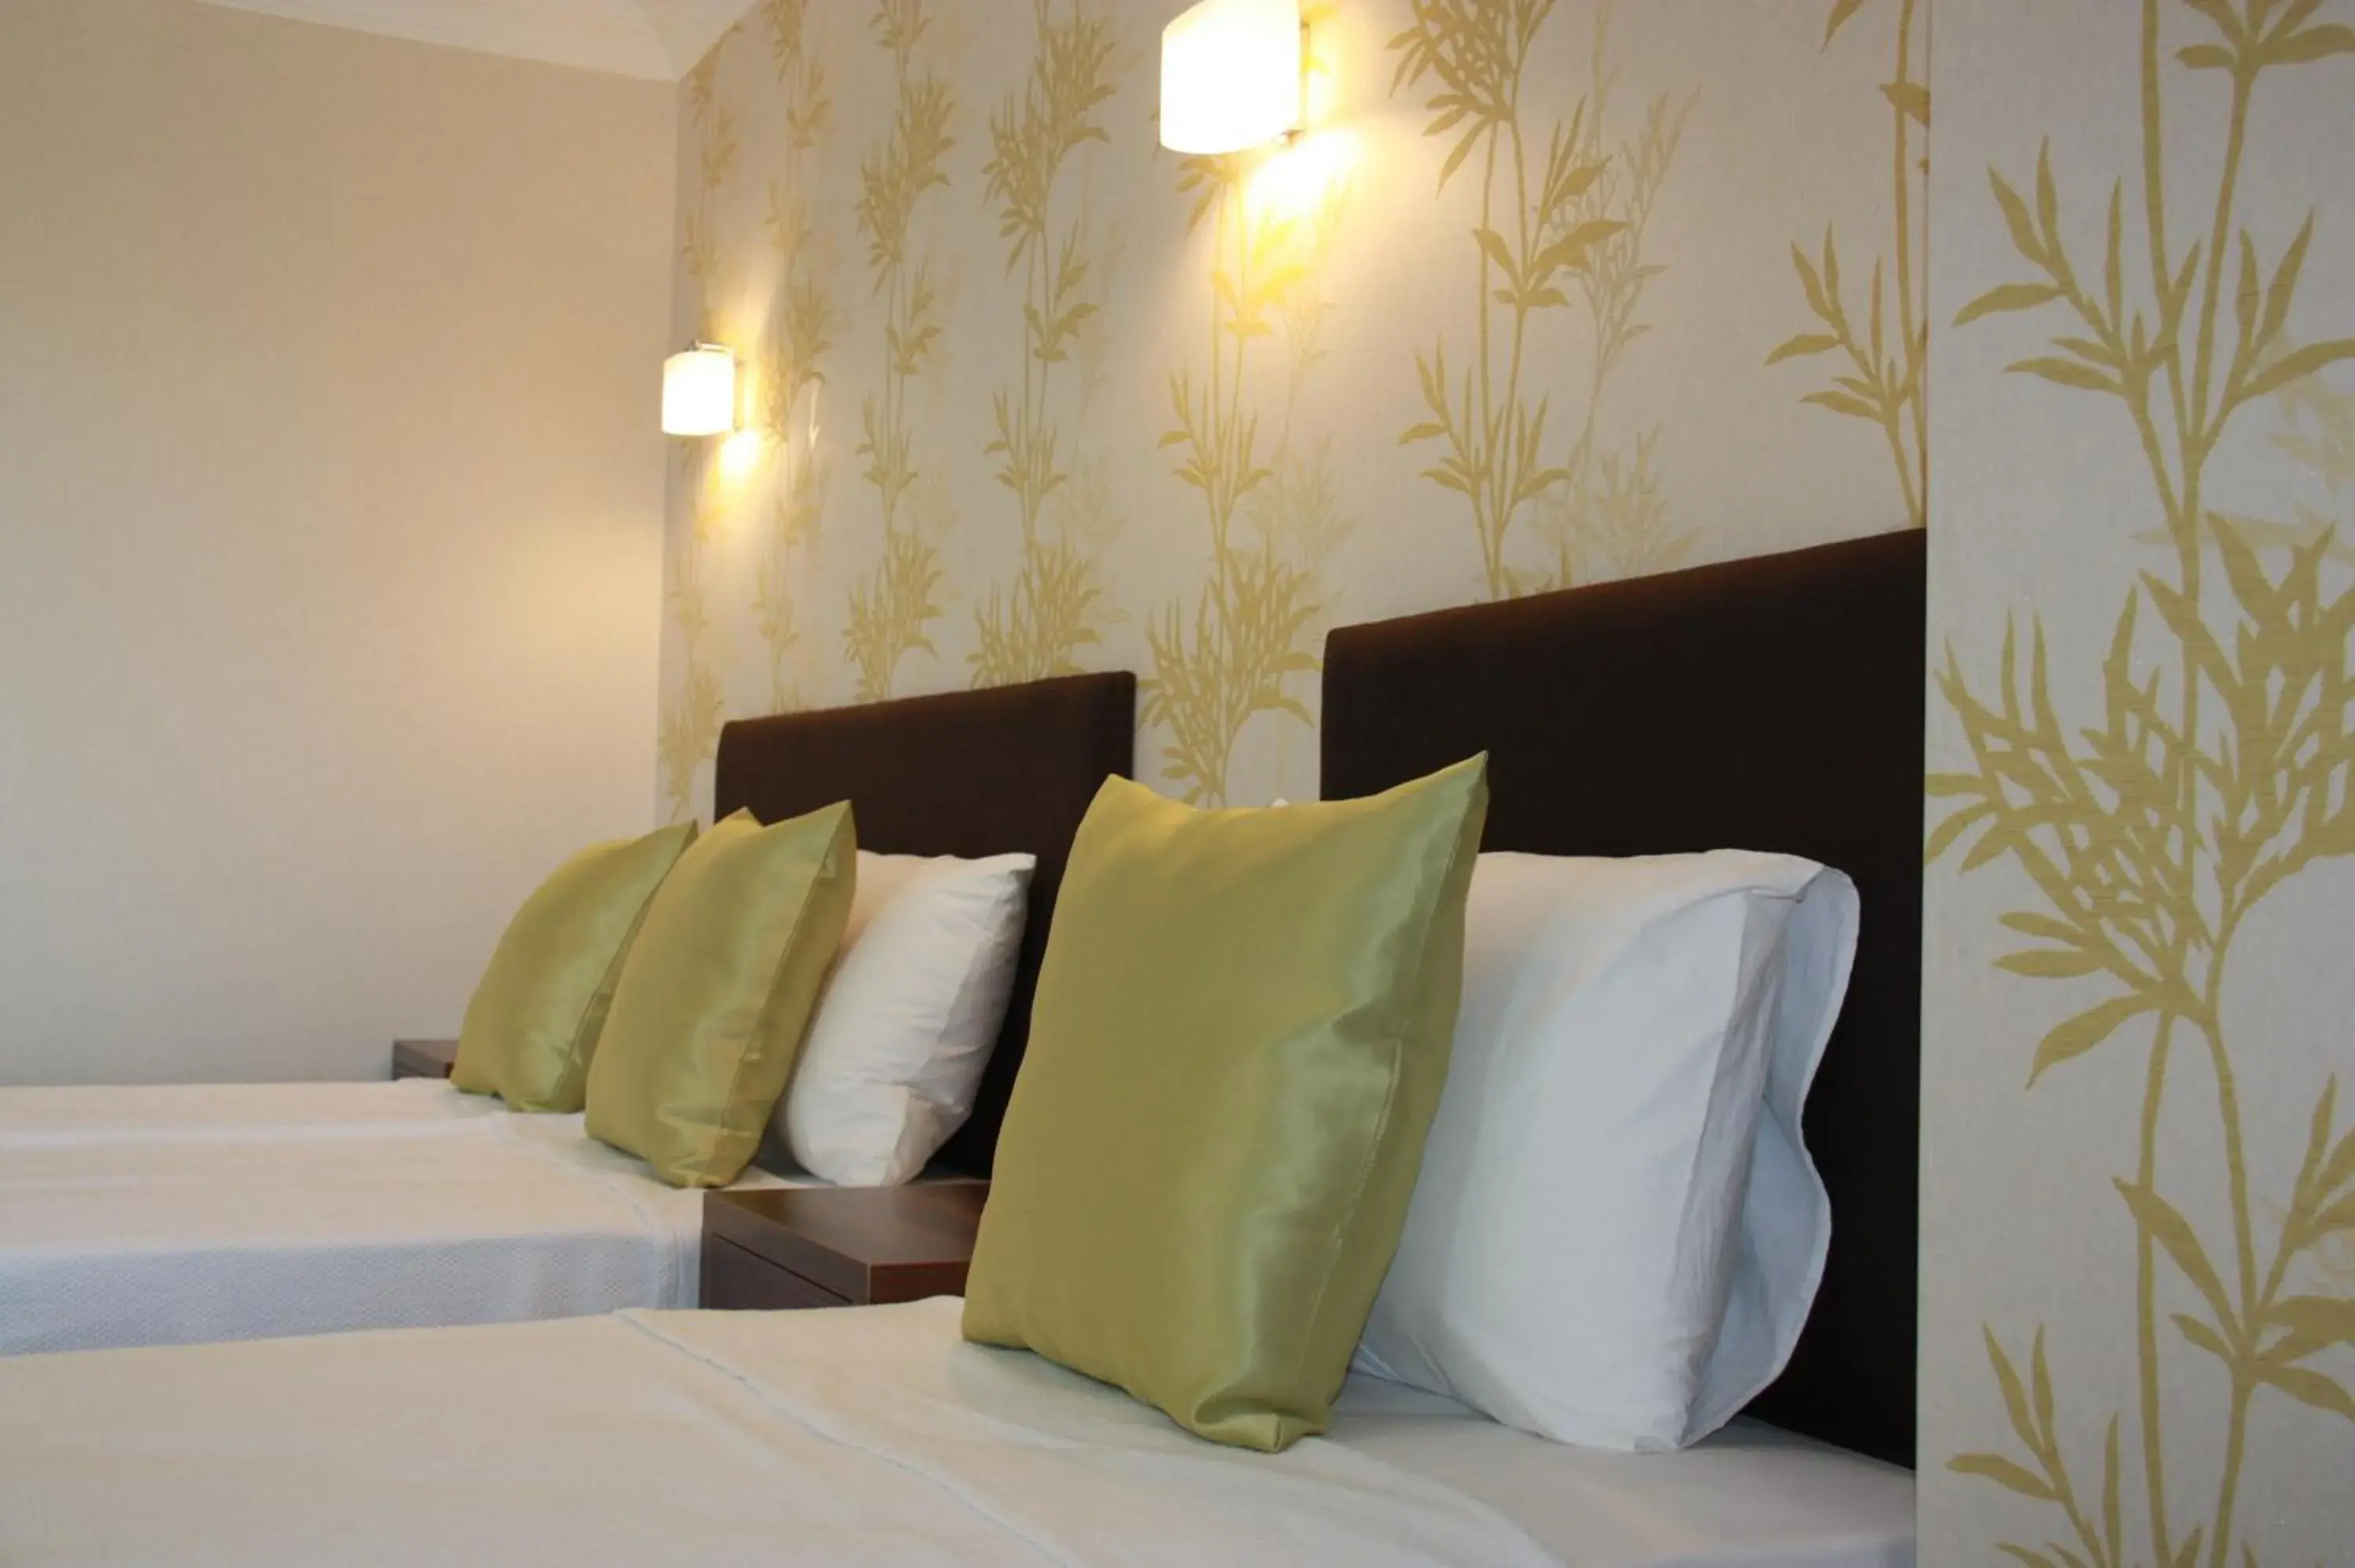 Decorative detail, Bed in Hotel Billurcu